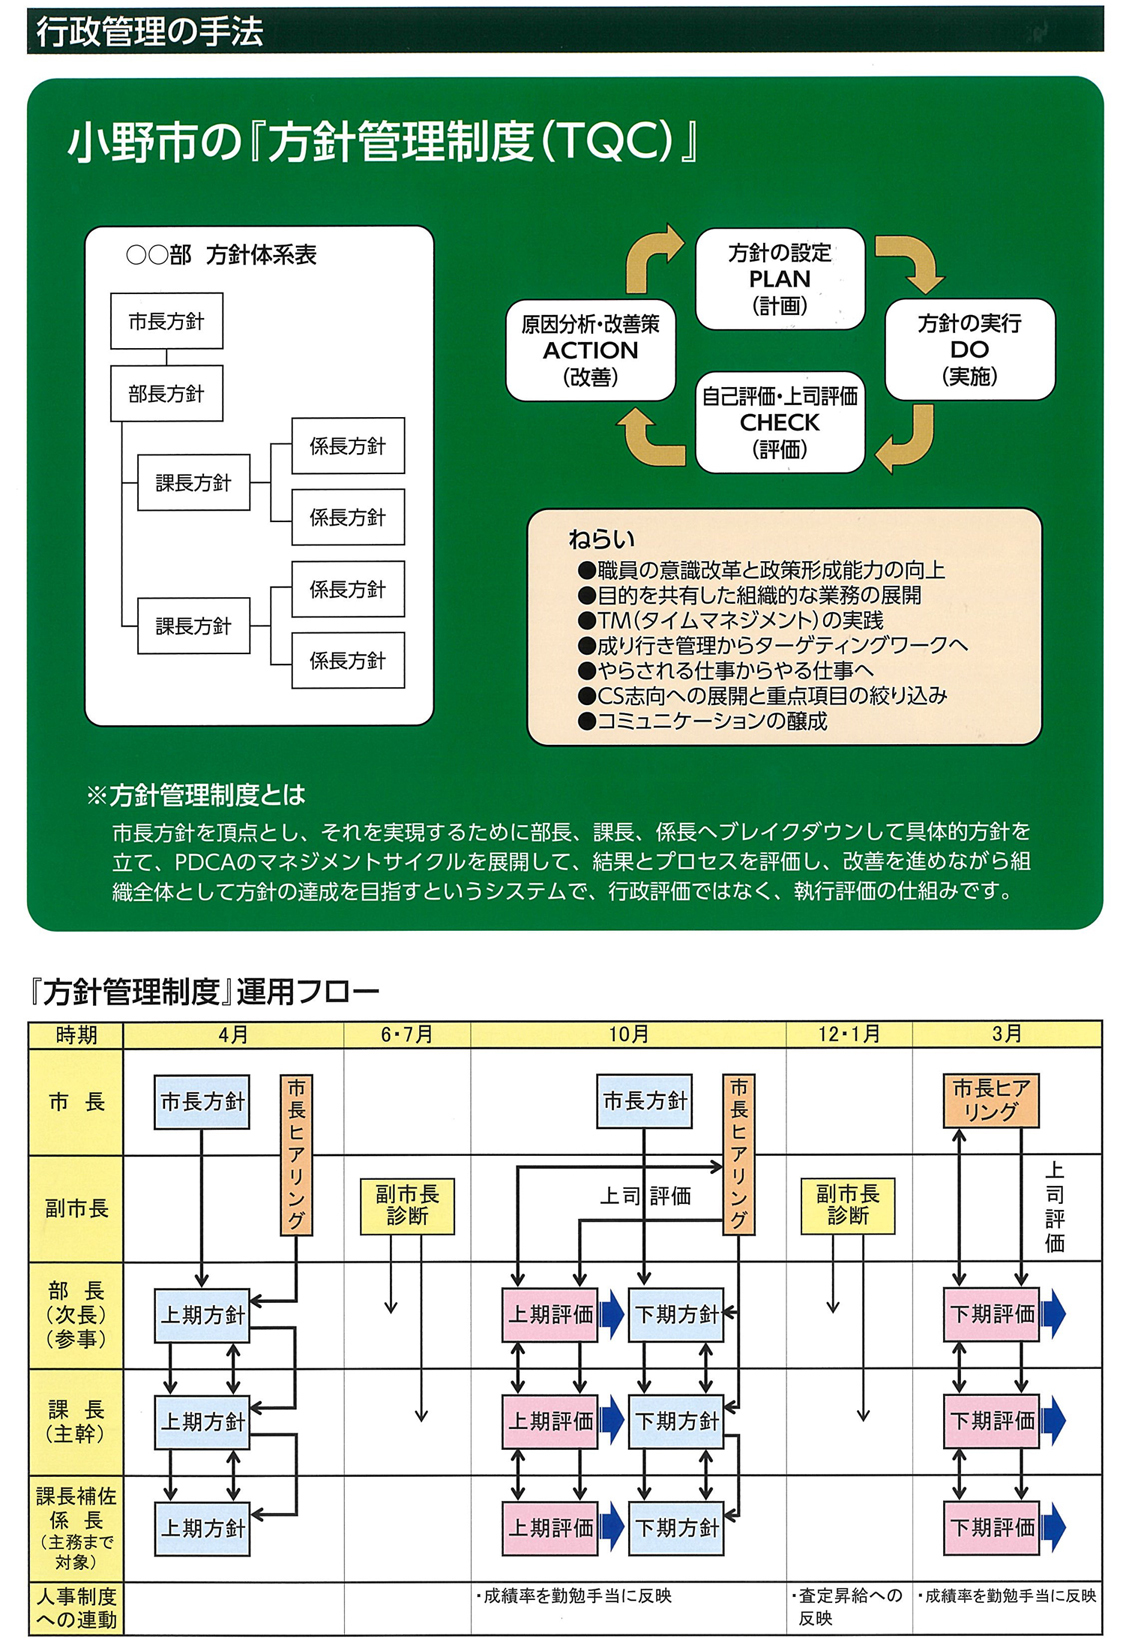 小野市流の行政経営の管理手法である方針管理制度の仕組みを説明した図の写真